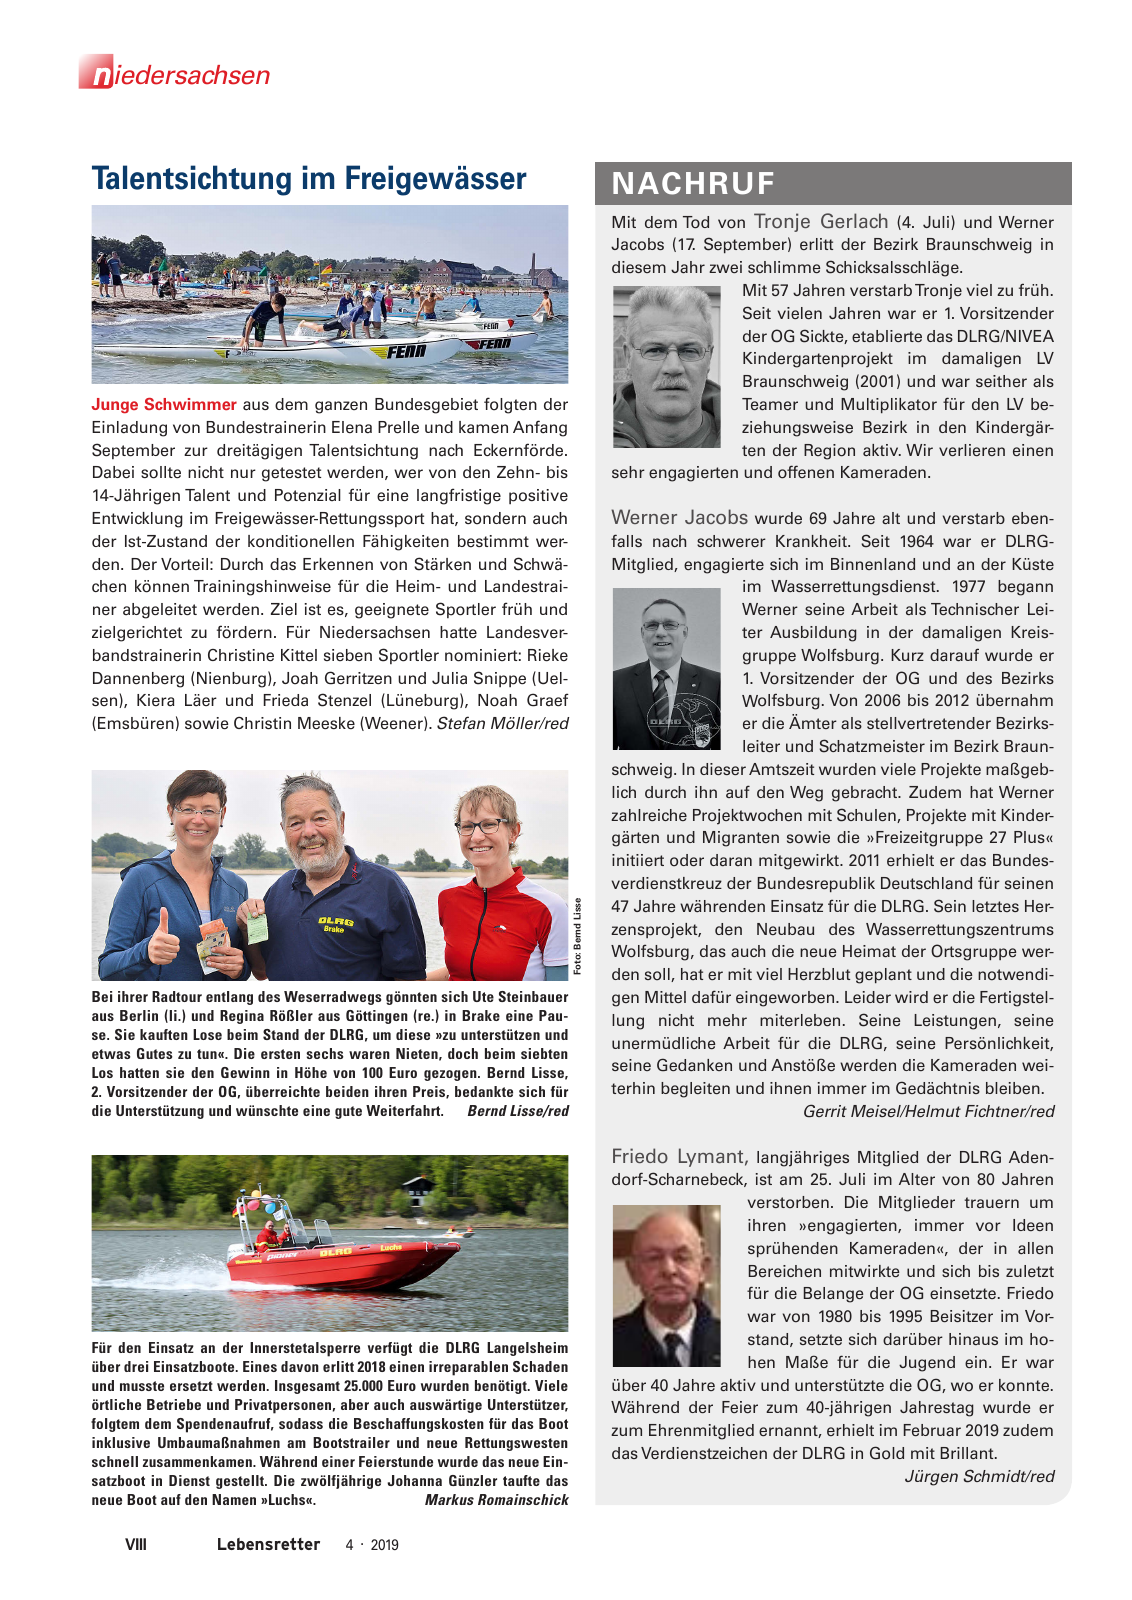 Vorschau Lebensretter 4/2019 -  Niedersachsen Regionalausgabe Seite 10